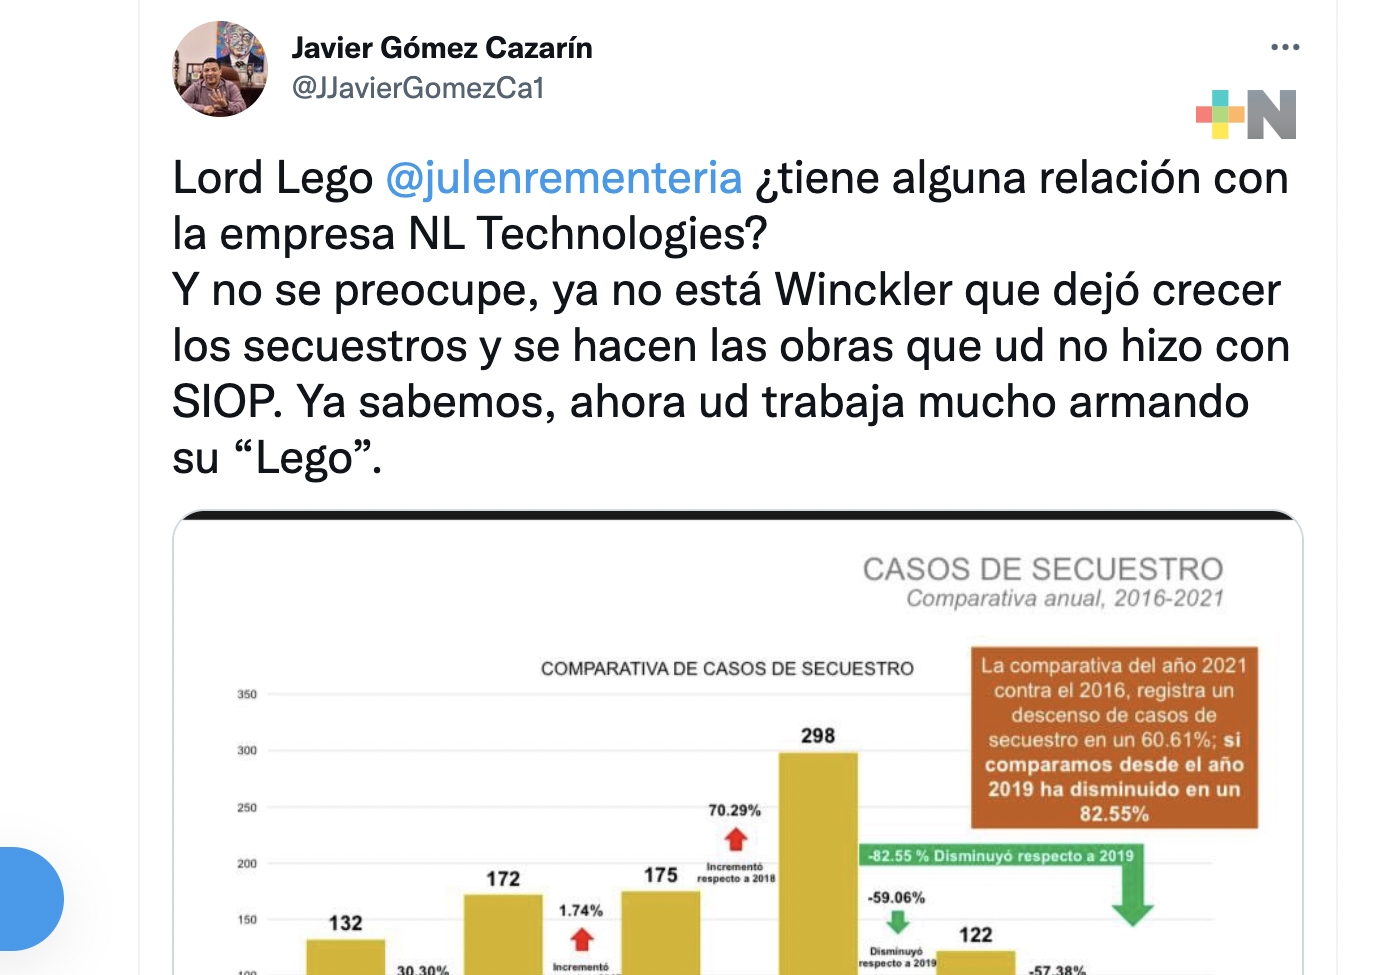 Cuestiona el diputado Gómez Cazarín a “Lord Lego”, Julen Rementería; en redes sociales